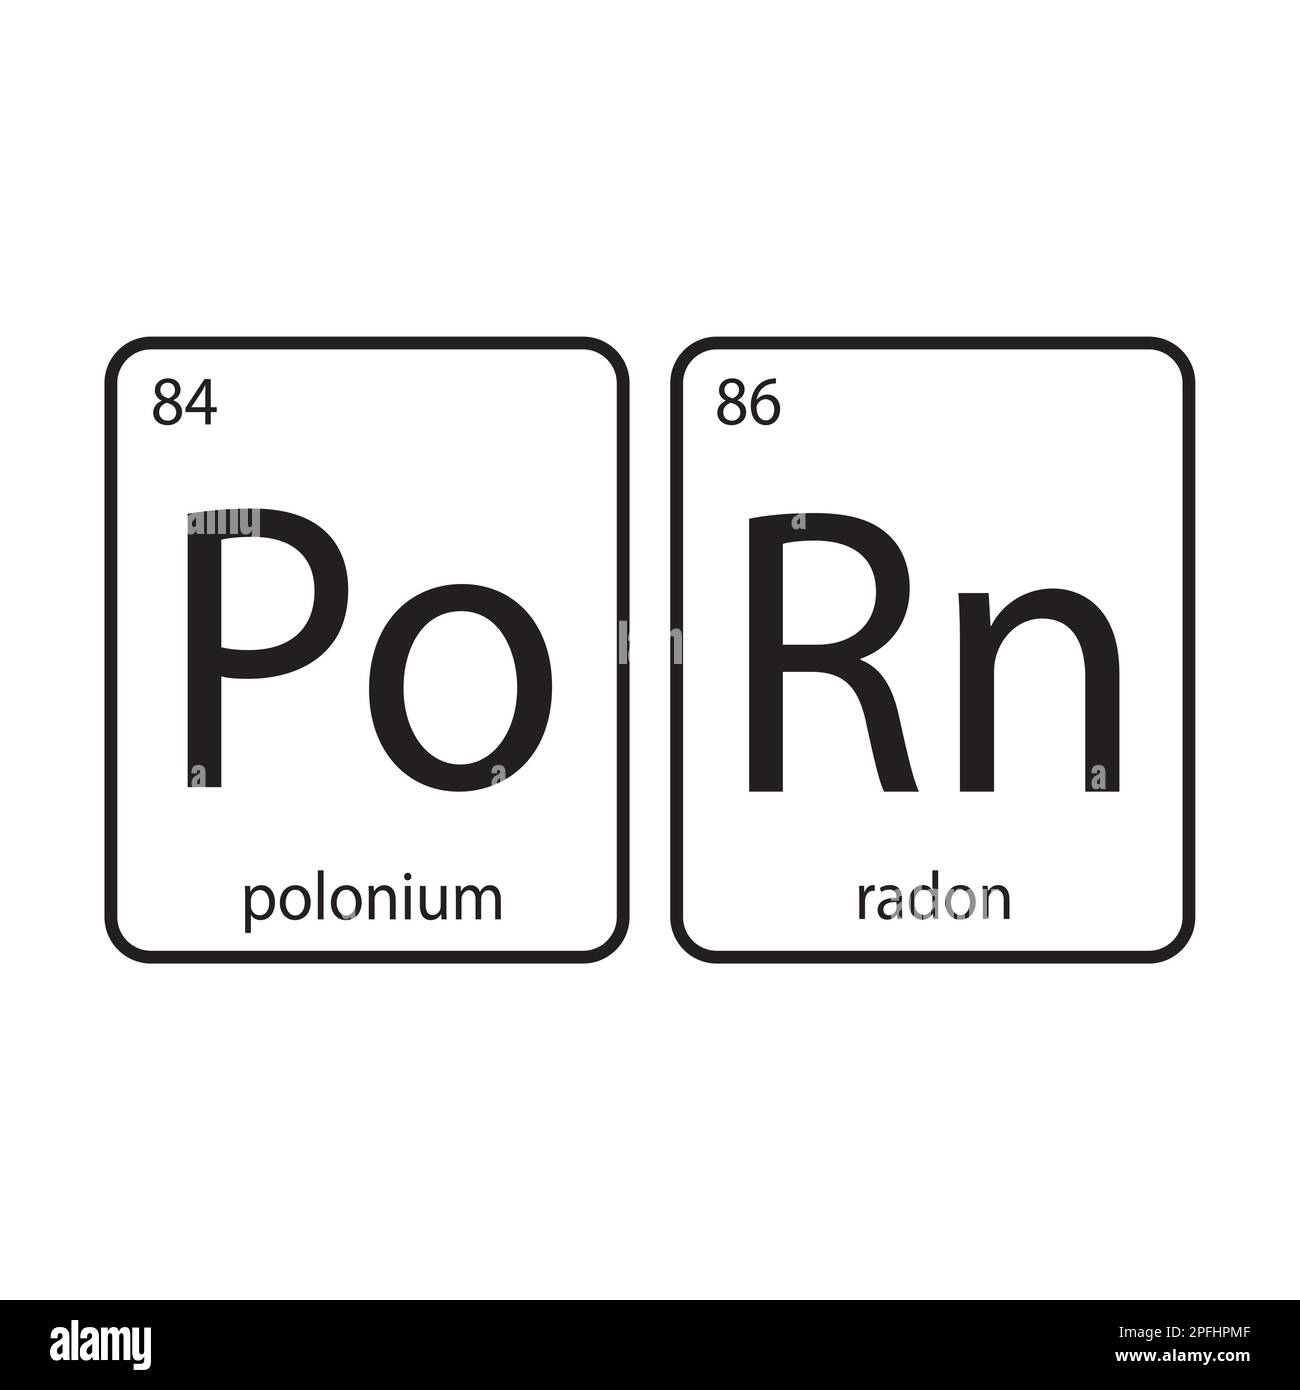 Les éléments chimiques du tableau périodique, drôle de phrase-porn isolé sur fond blanc. Bannière amusante pour l'impression ou le Web. Illustration vectorielle. Illustration de Vecteur